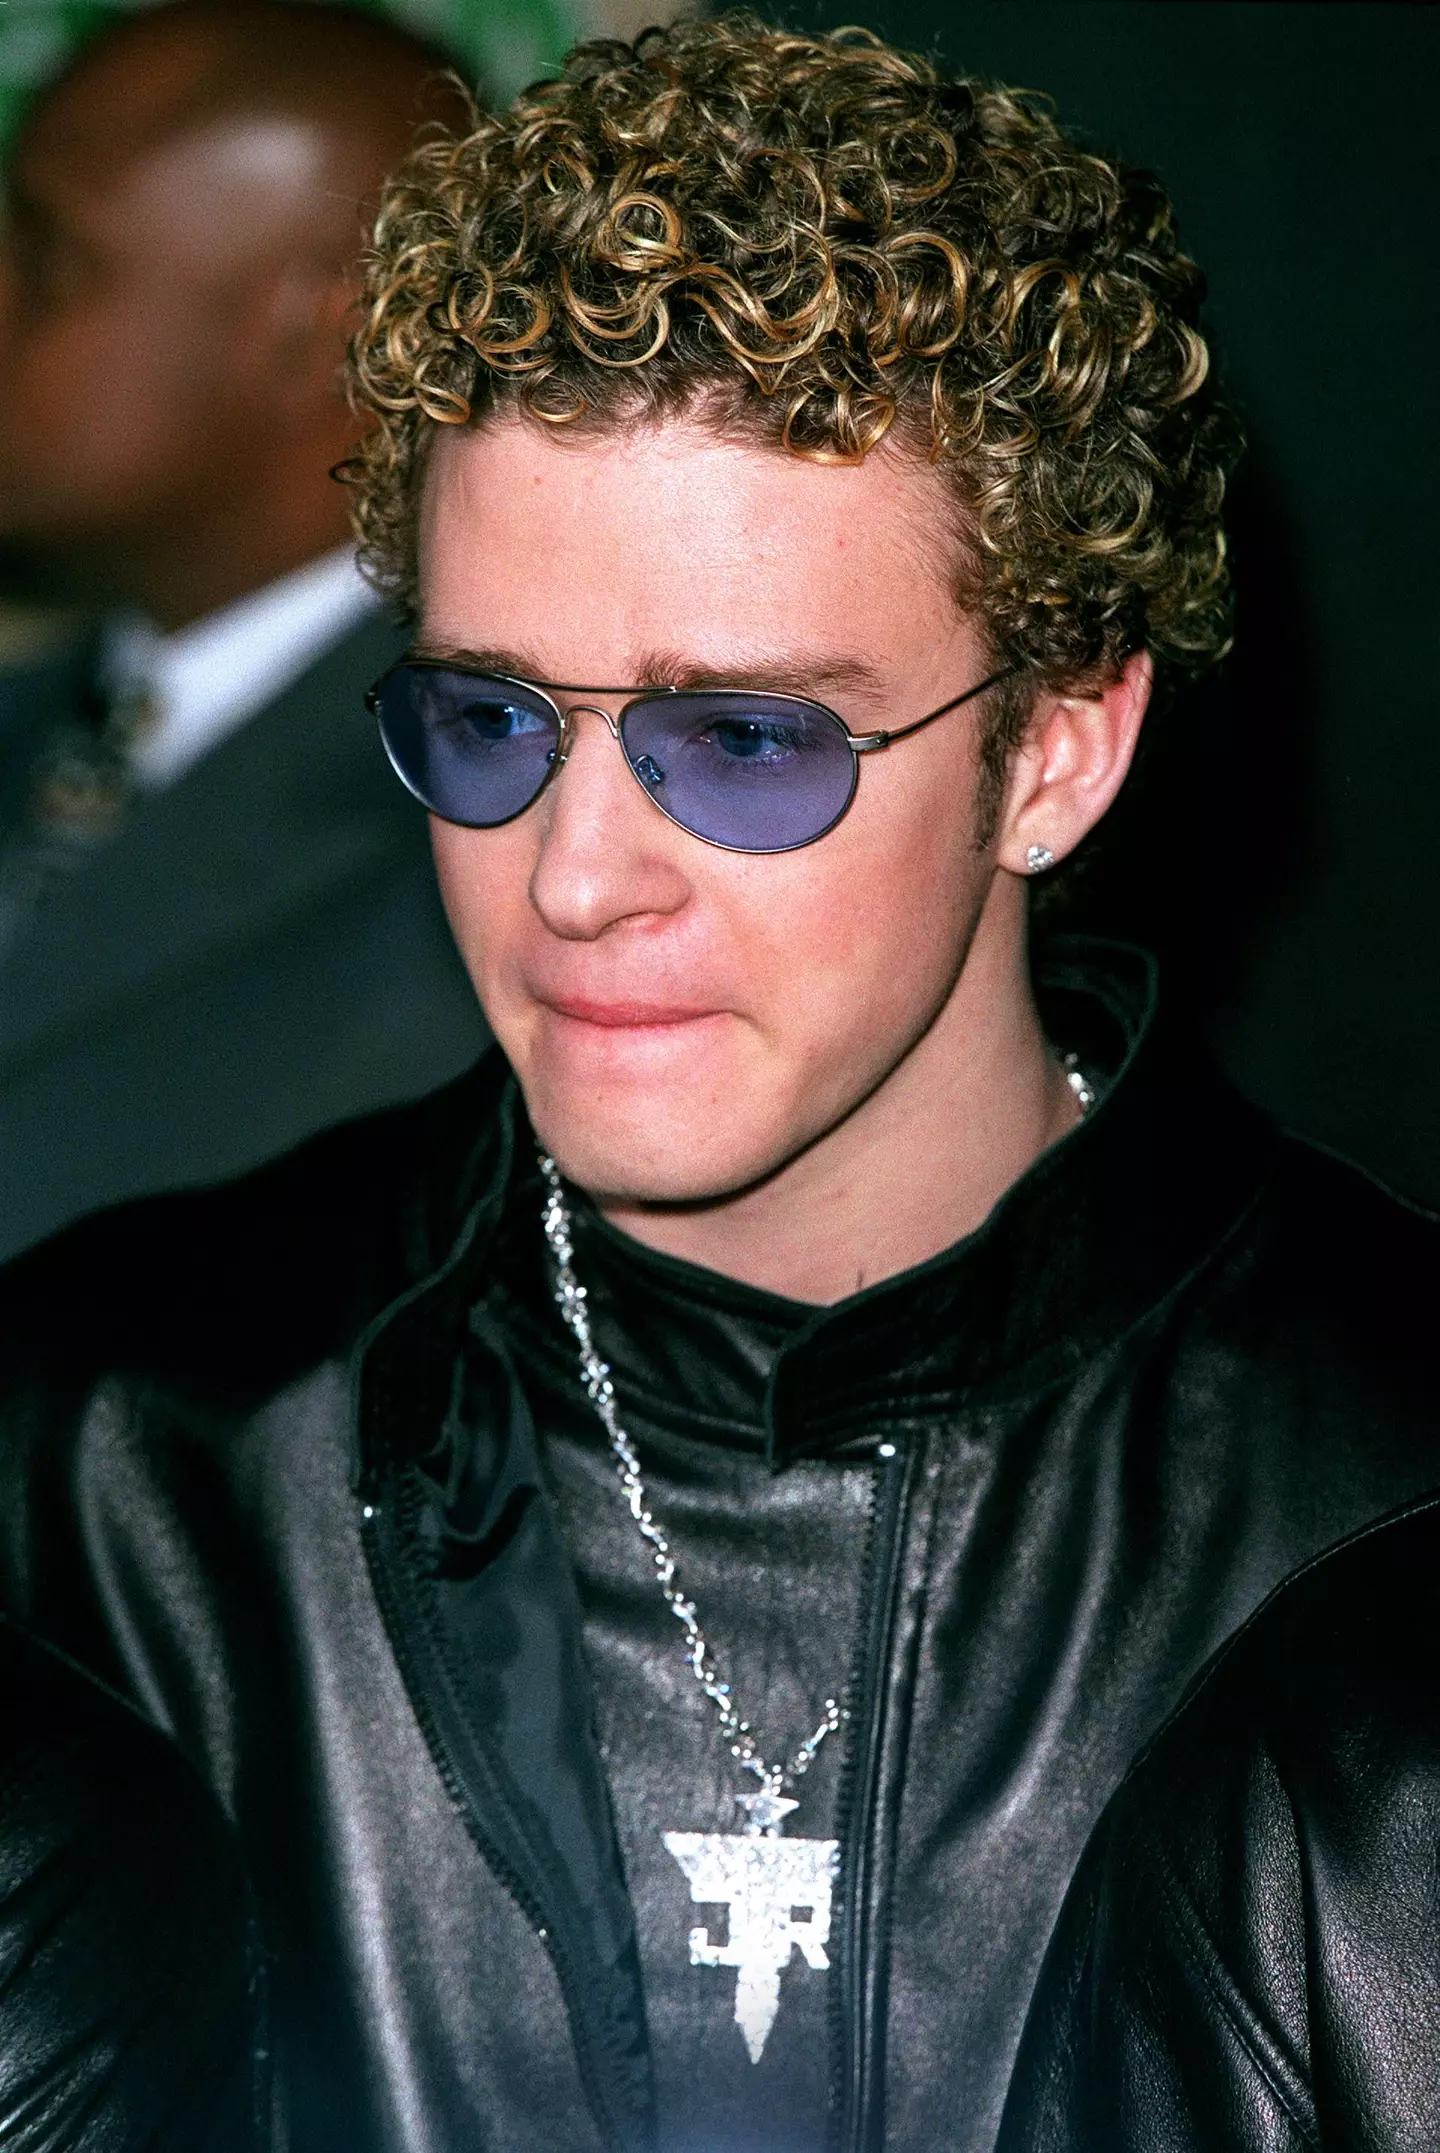 Timberlake struck a $100 million deal.